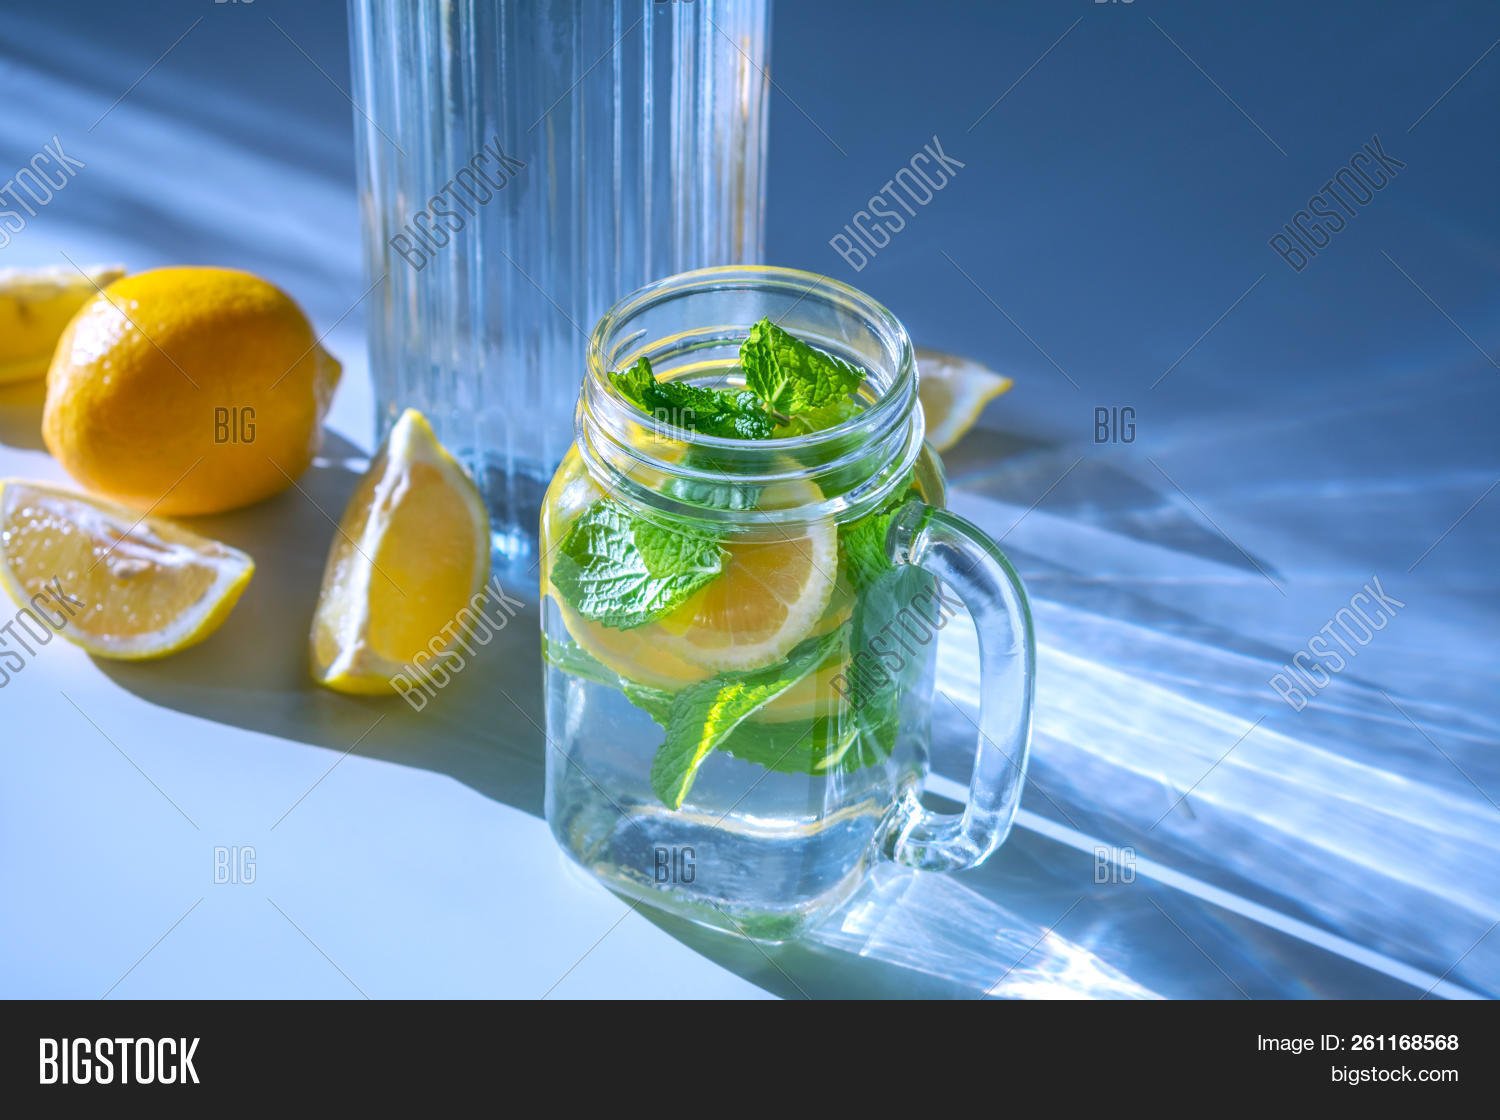 Напиток для похудения лимон вода. Вода с лимоном и мятой. Стакан воды с лимоном. Лимон. Лимонная вода с мятой.